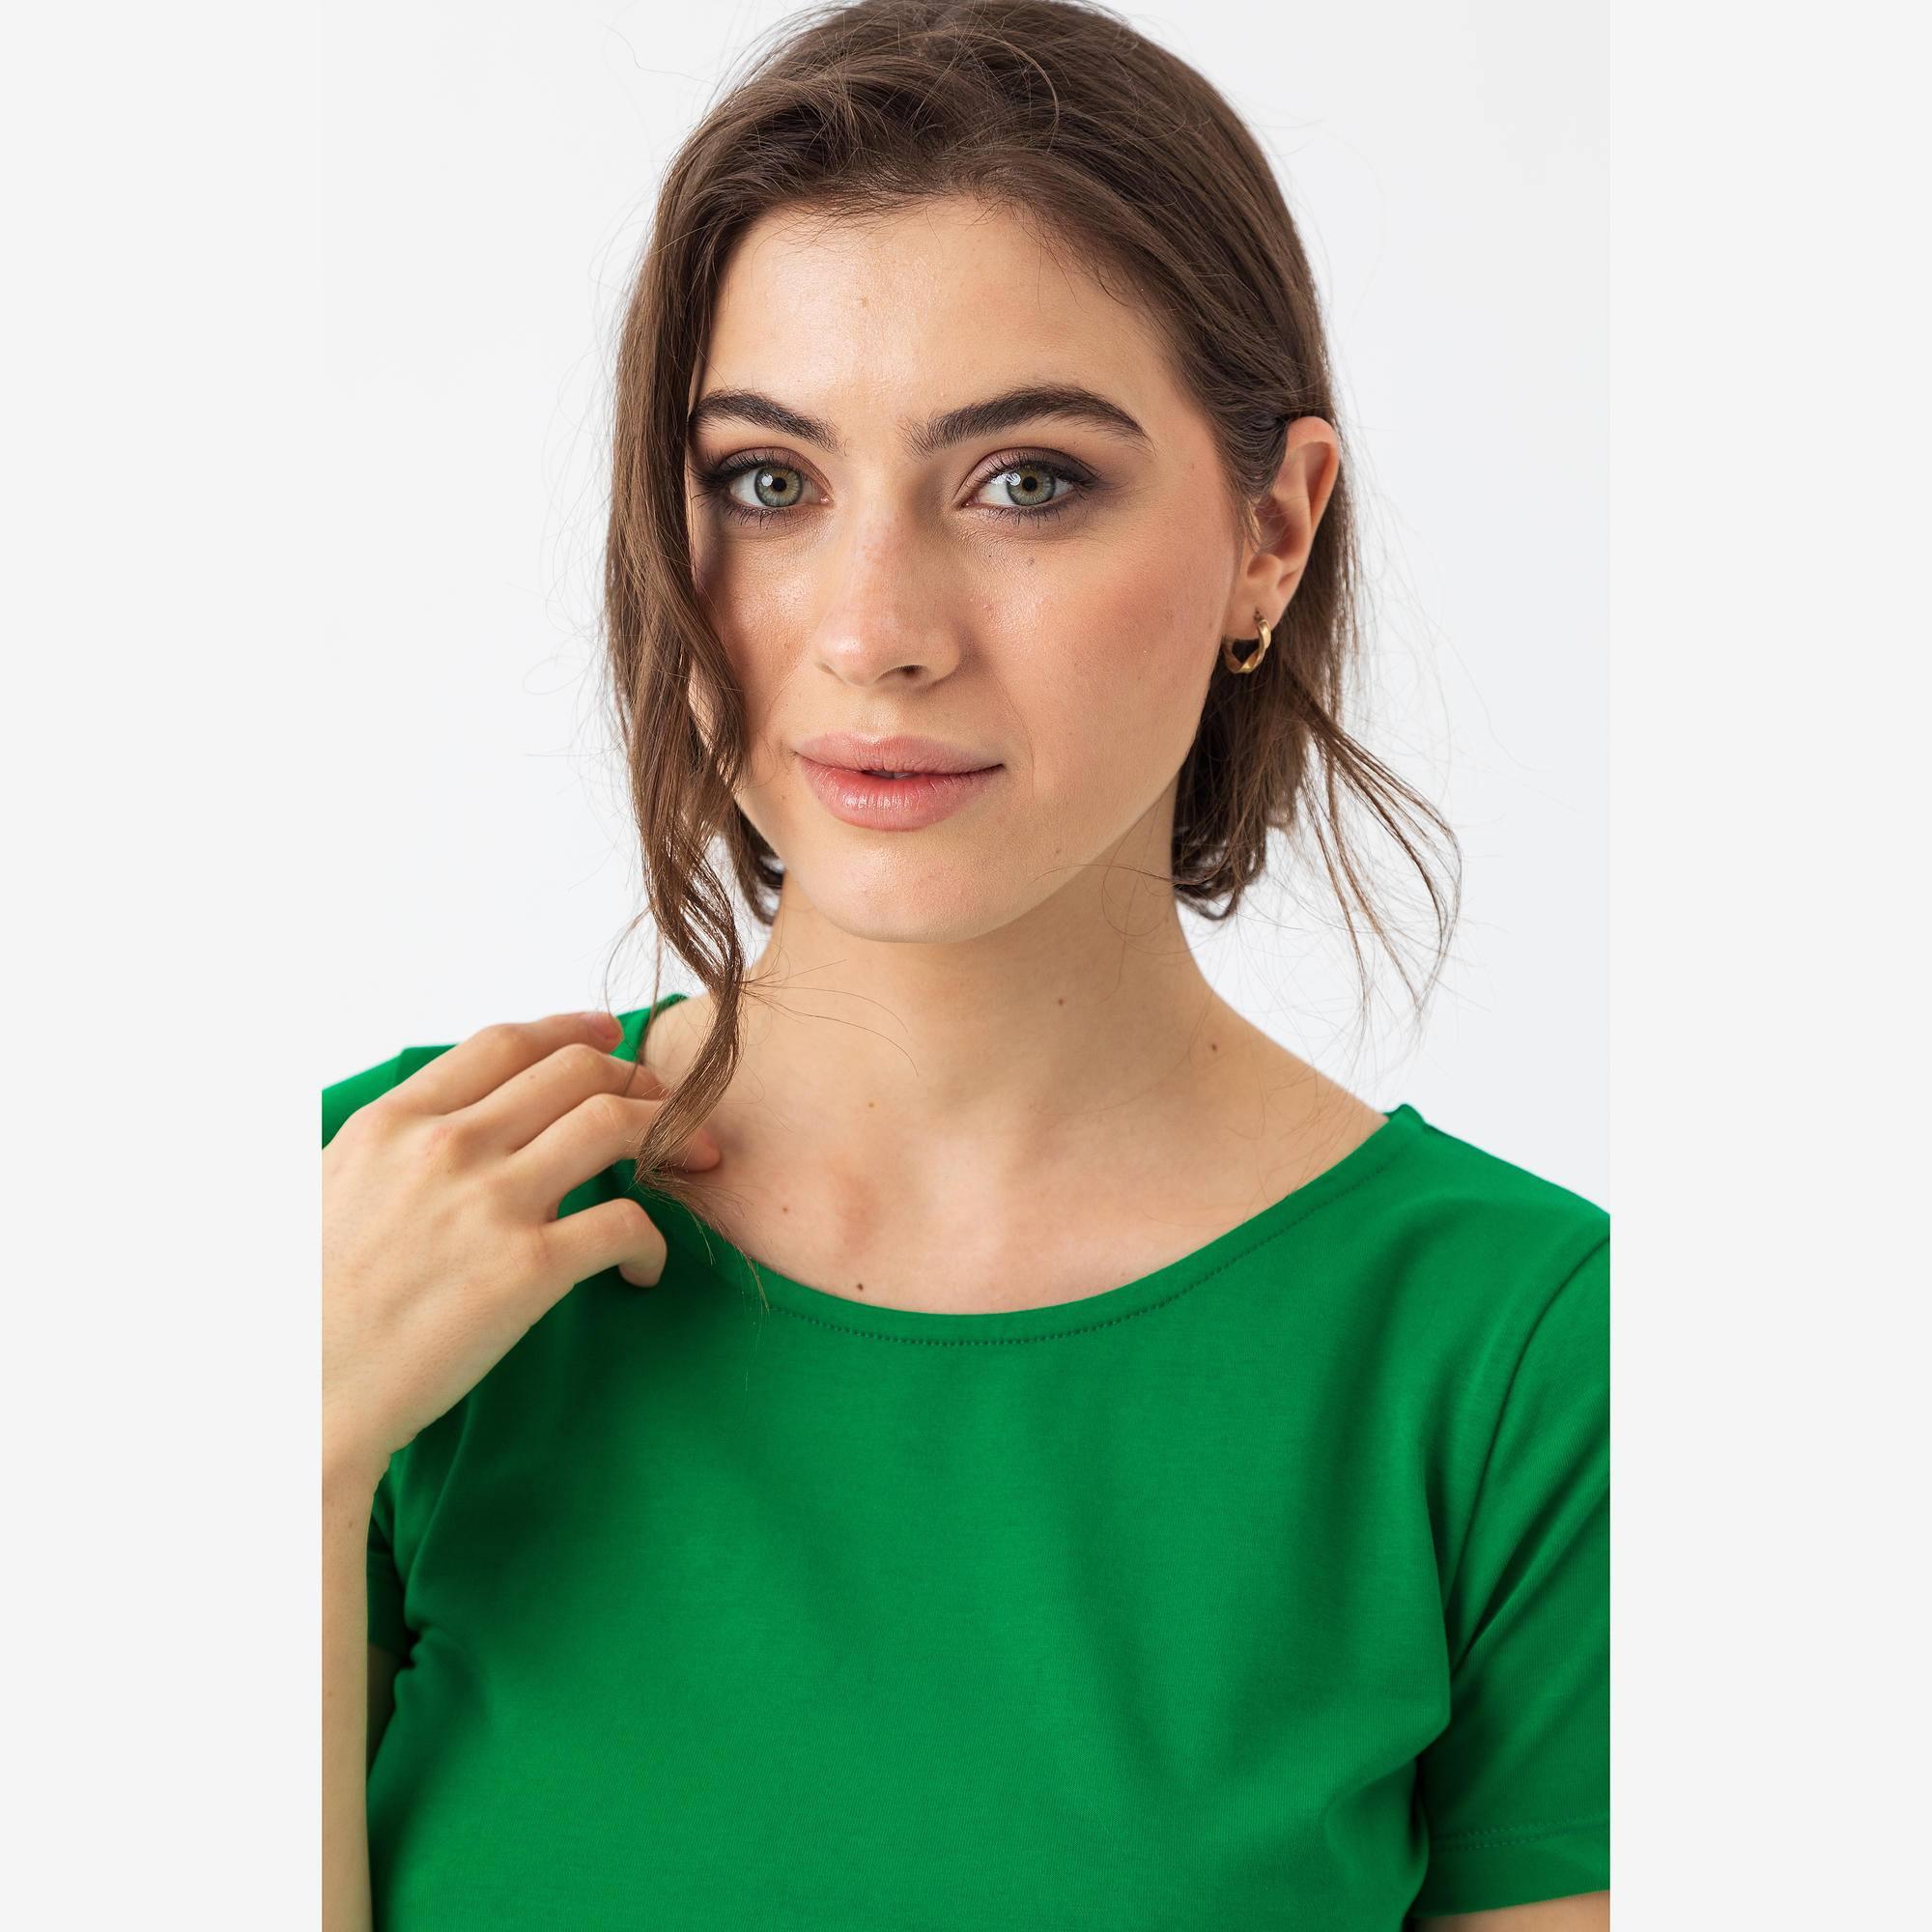 Zielona koszulka damska